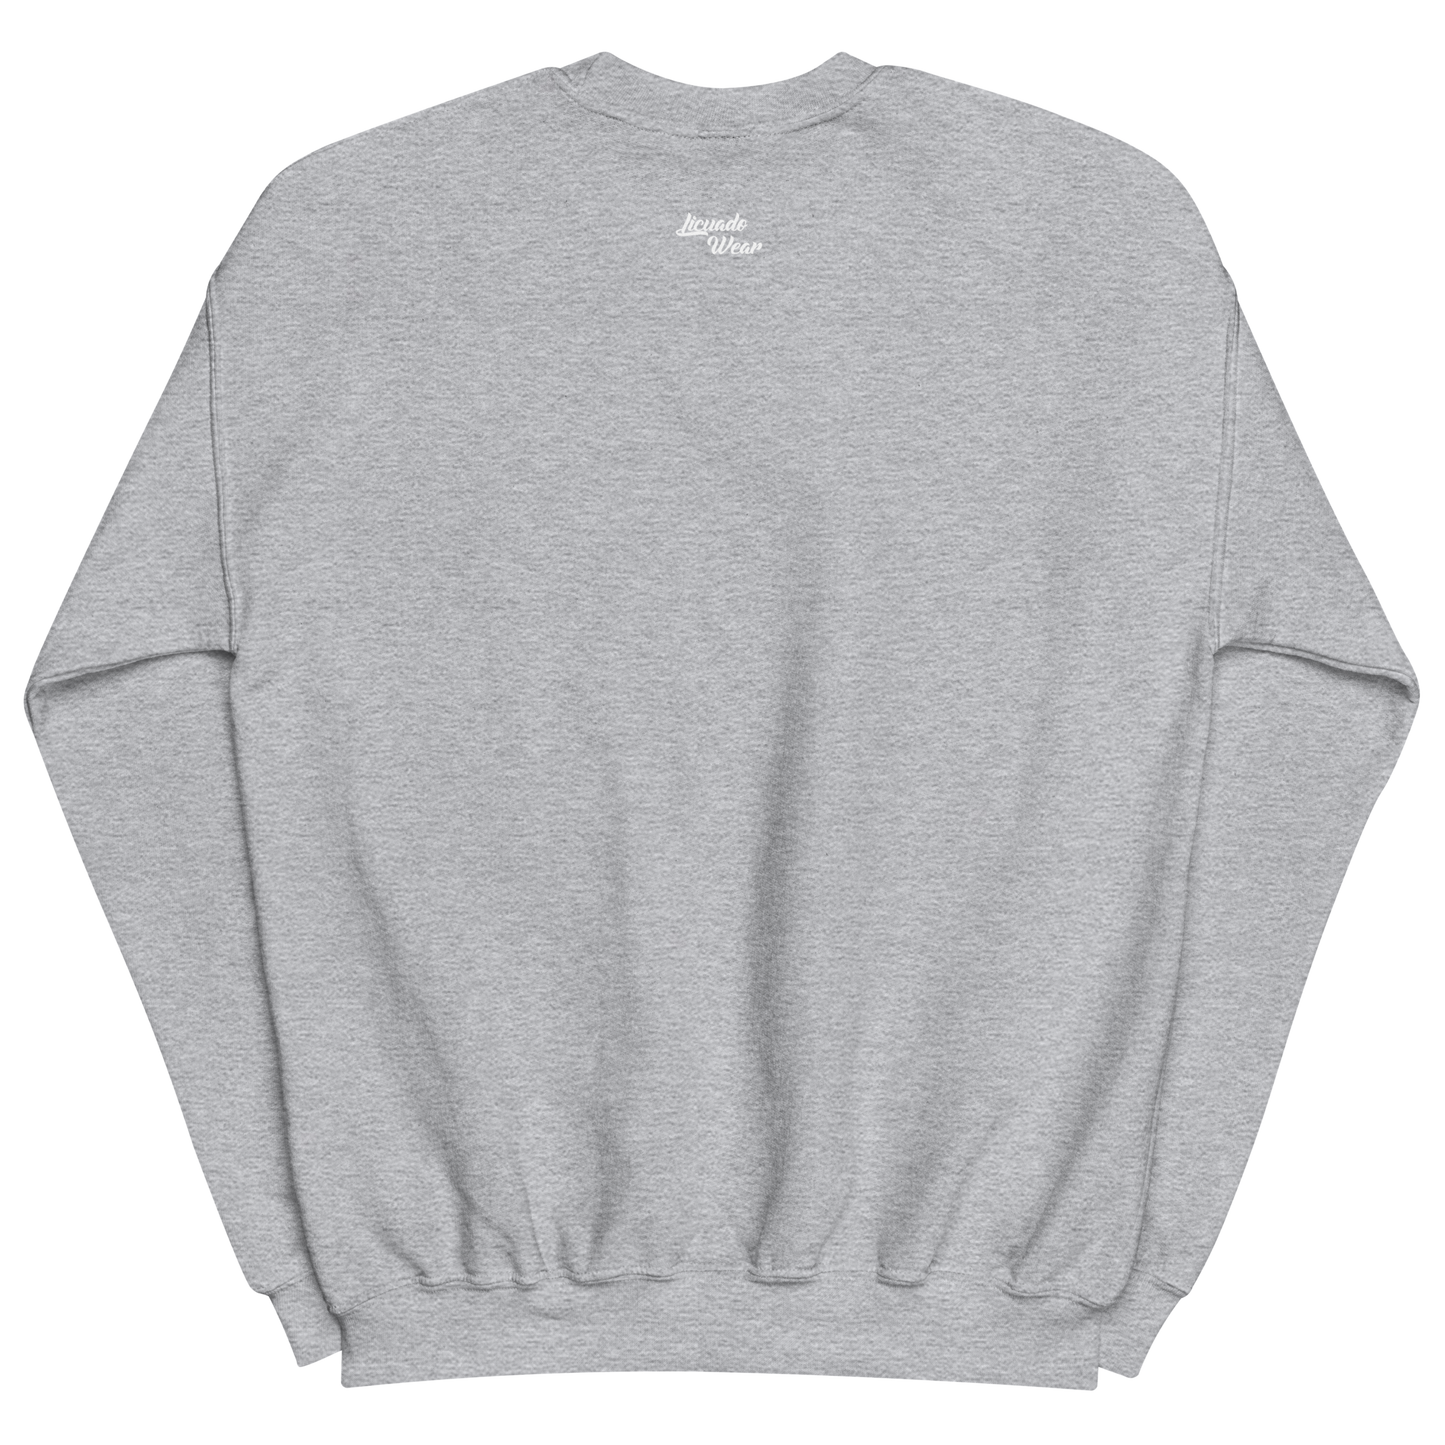 Chingona 365 - Unisex Sweatshirt